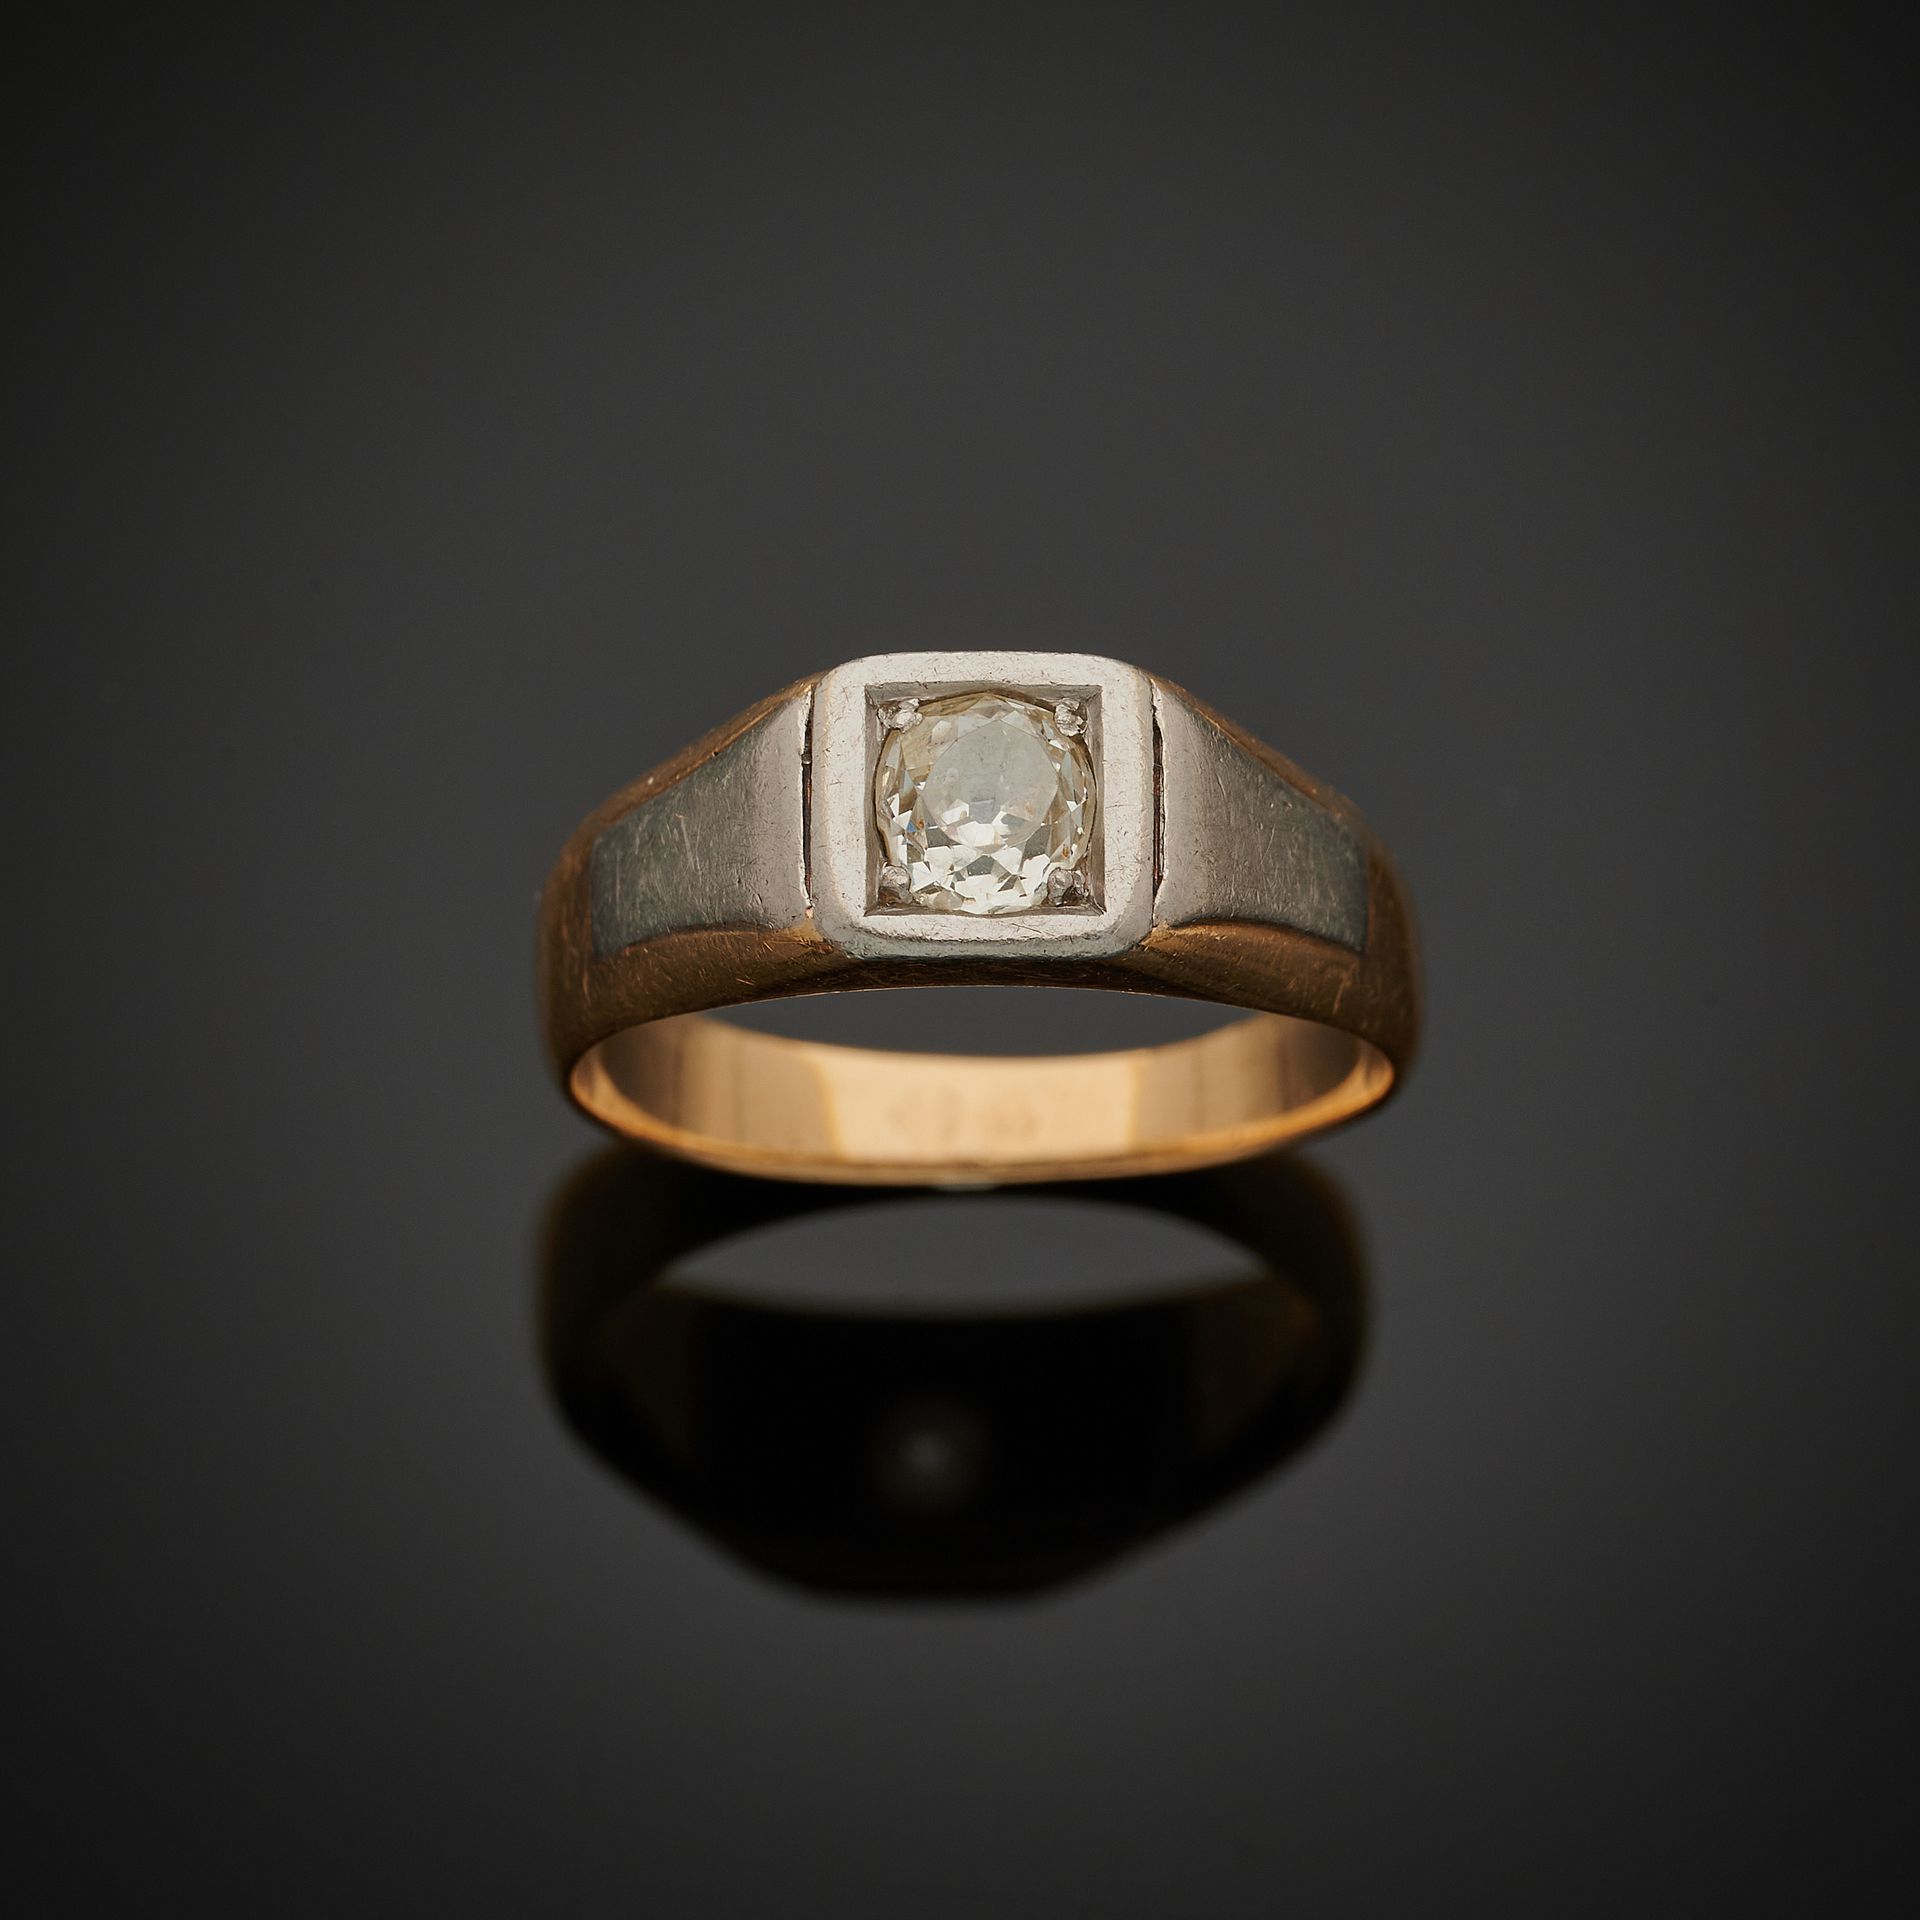 Null 一枚750毫米黄金和850毫米铂金方形戒指，镶有一颗重量约为0.70克拉的老式切割钻石。
鉴定标准 : 60 
总重量 : 7,3 克